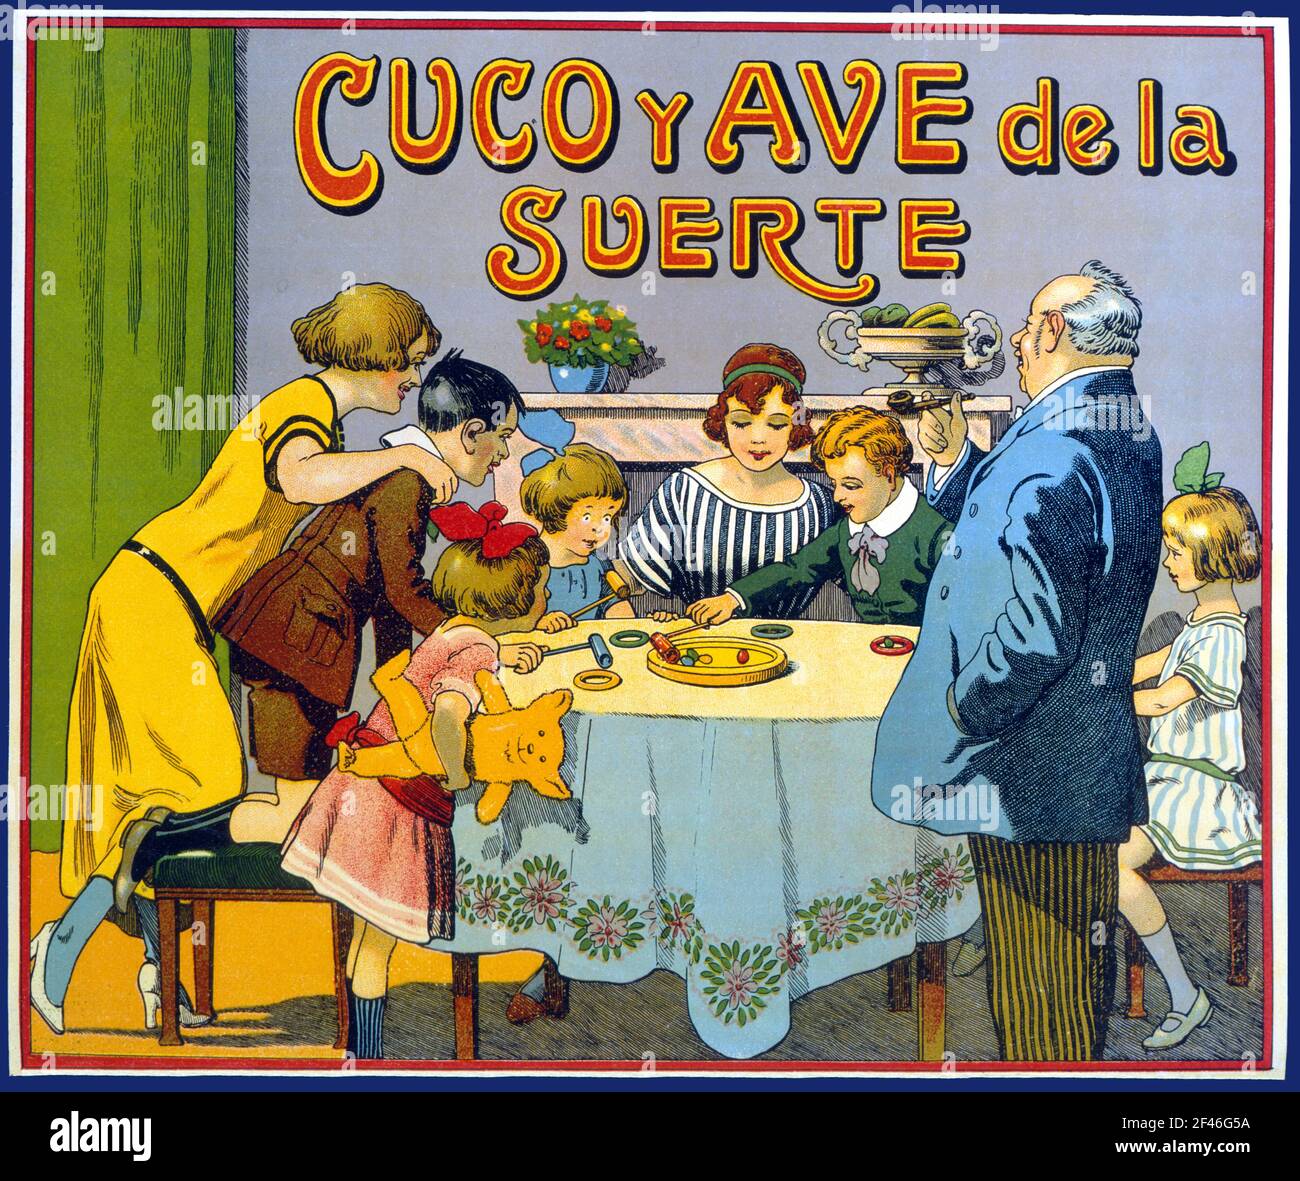 Juguetes de cartón y madera. Caja del juego Cuco y Ave de la Suerte, fabricado por Juguetes Borrás, de Mataró. Año 1929. Stock Photo